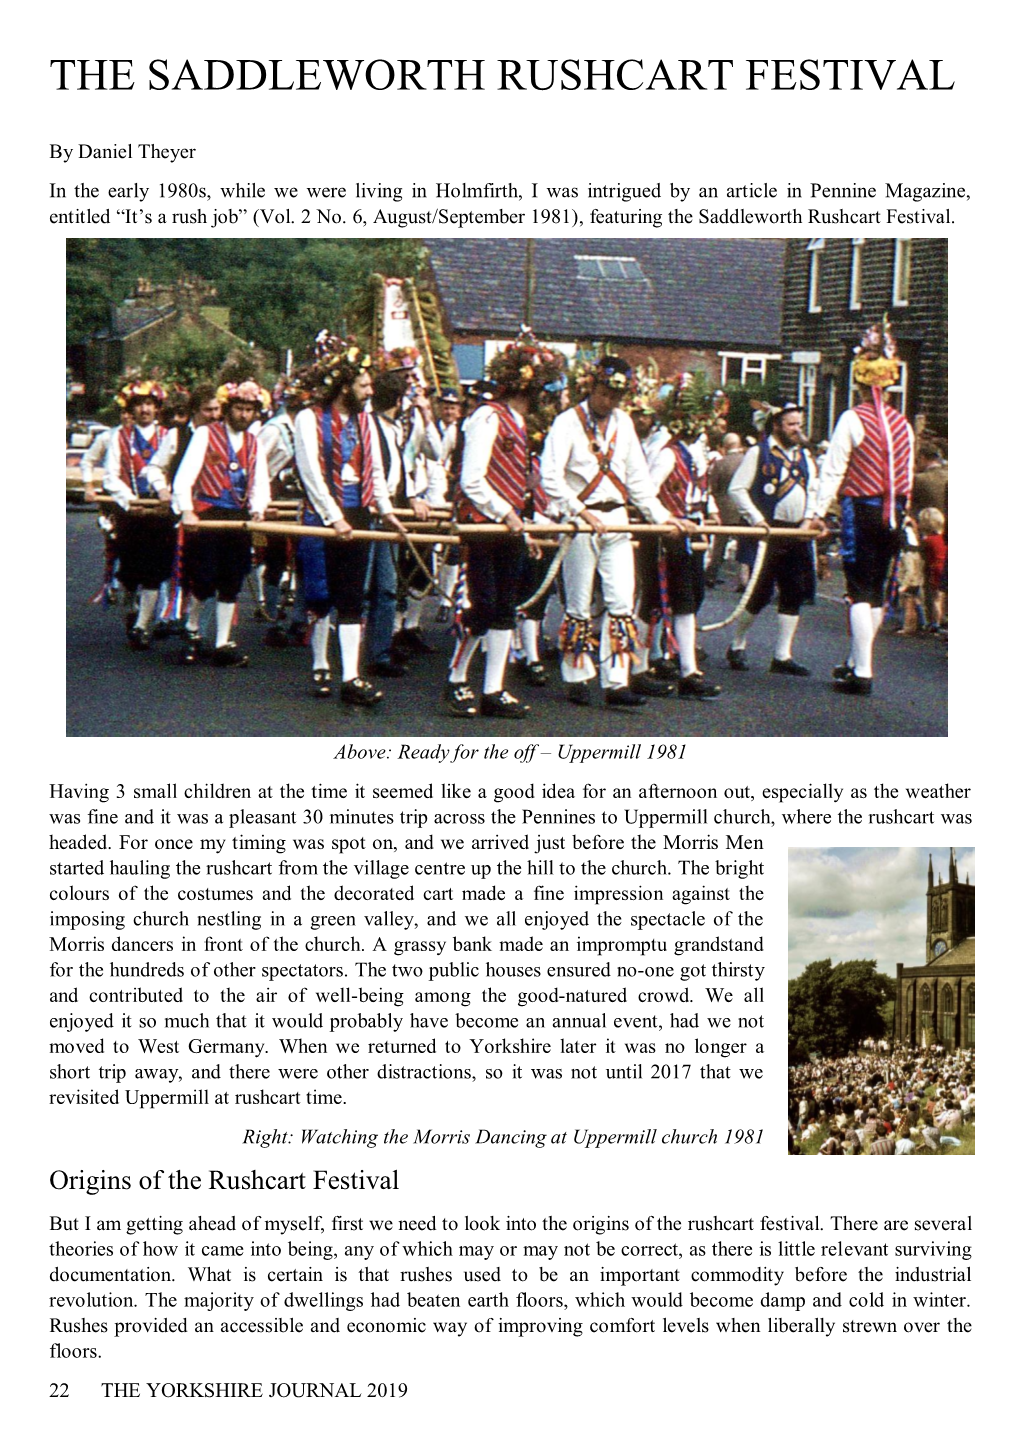 The Saddleworth Rushcart Festival